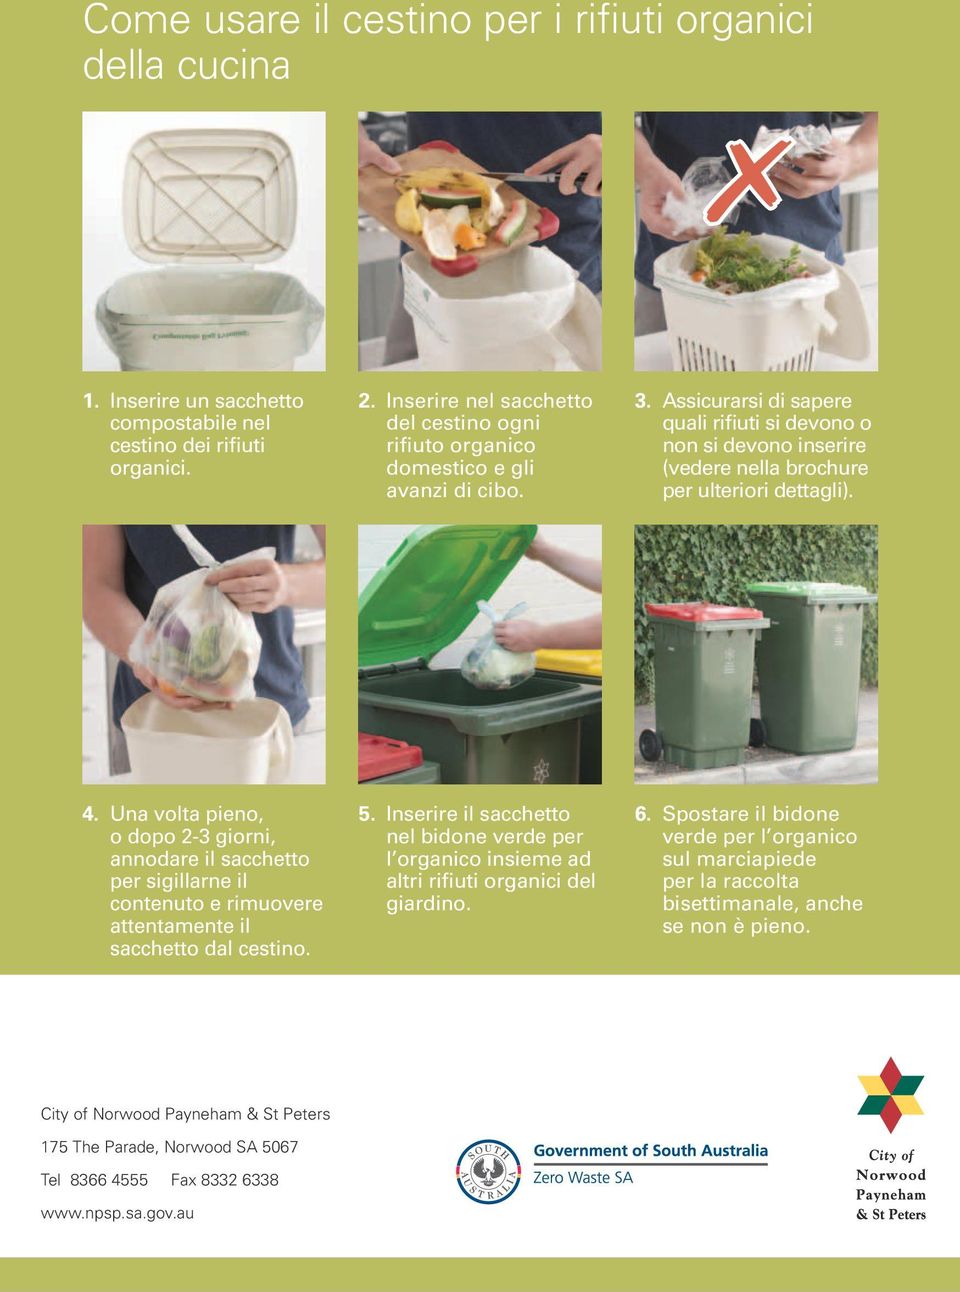 Assicurarsi di sapere quali rifiuti si devono o non si devono inserire (vedere nella brochure per ulteriori dettagli). 4.